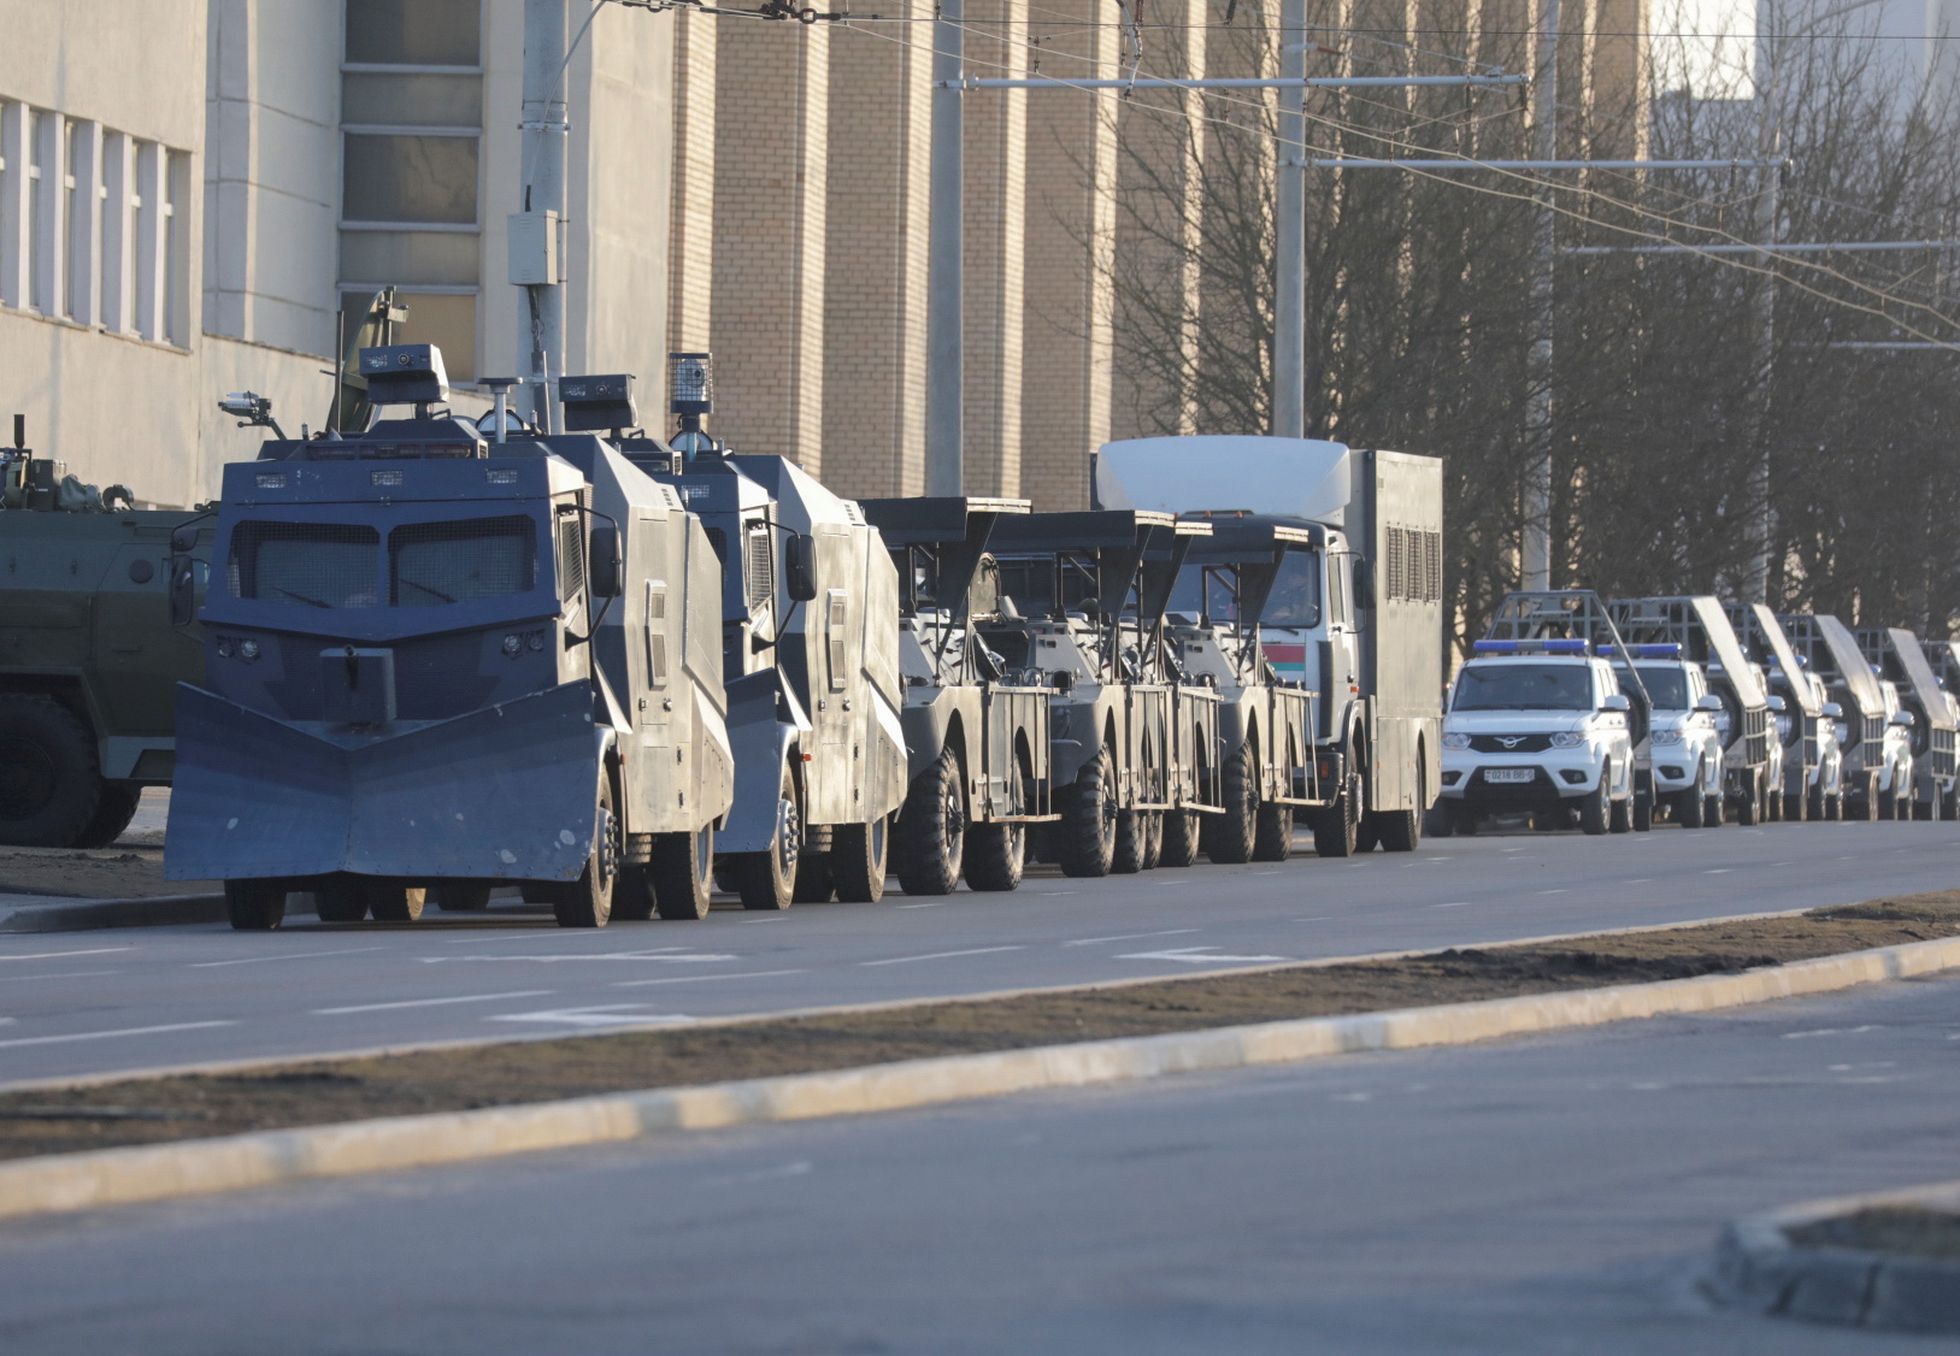 Автомобили сотрудников белорусских правоохранительных органов на улице в Минске, Беларусь, 25 марта 2021 года